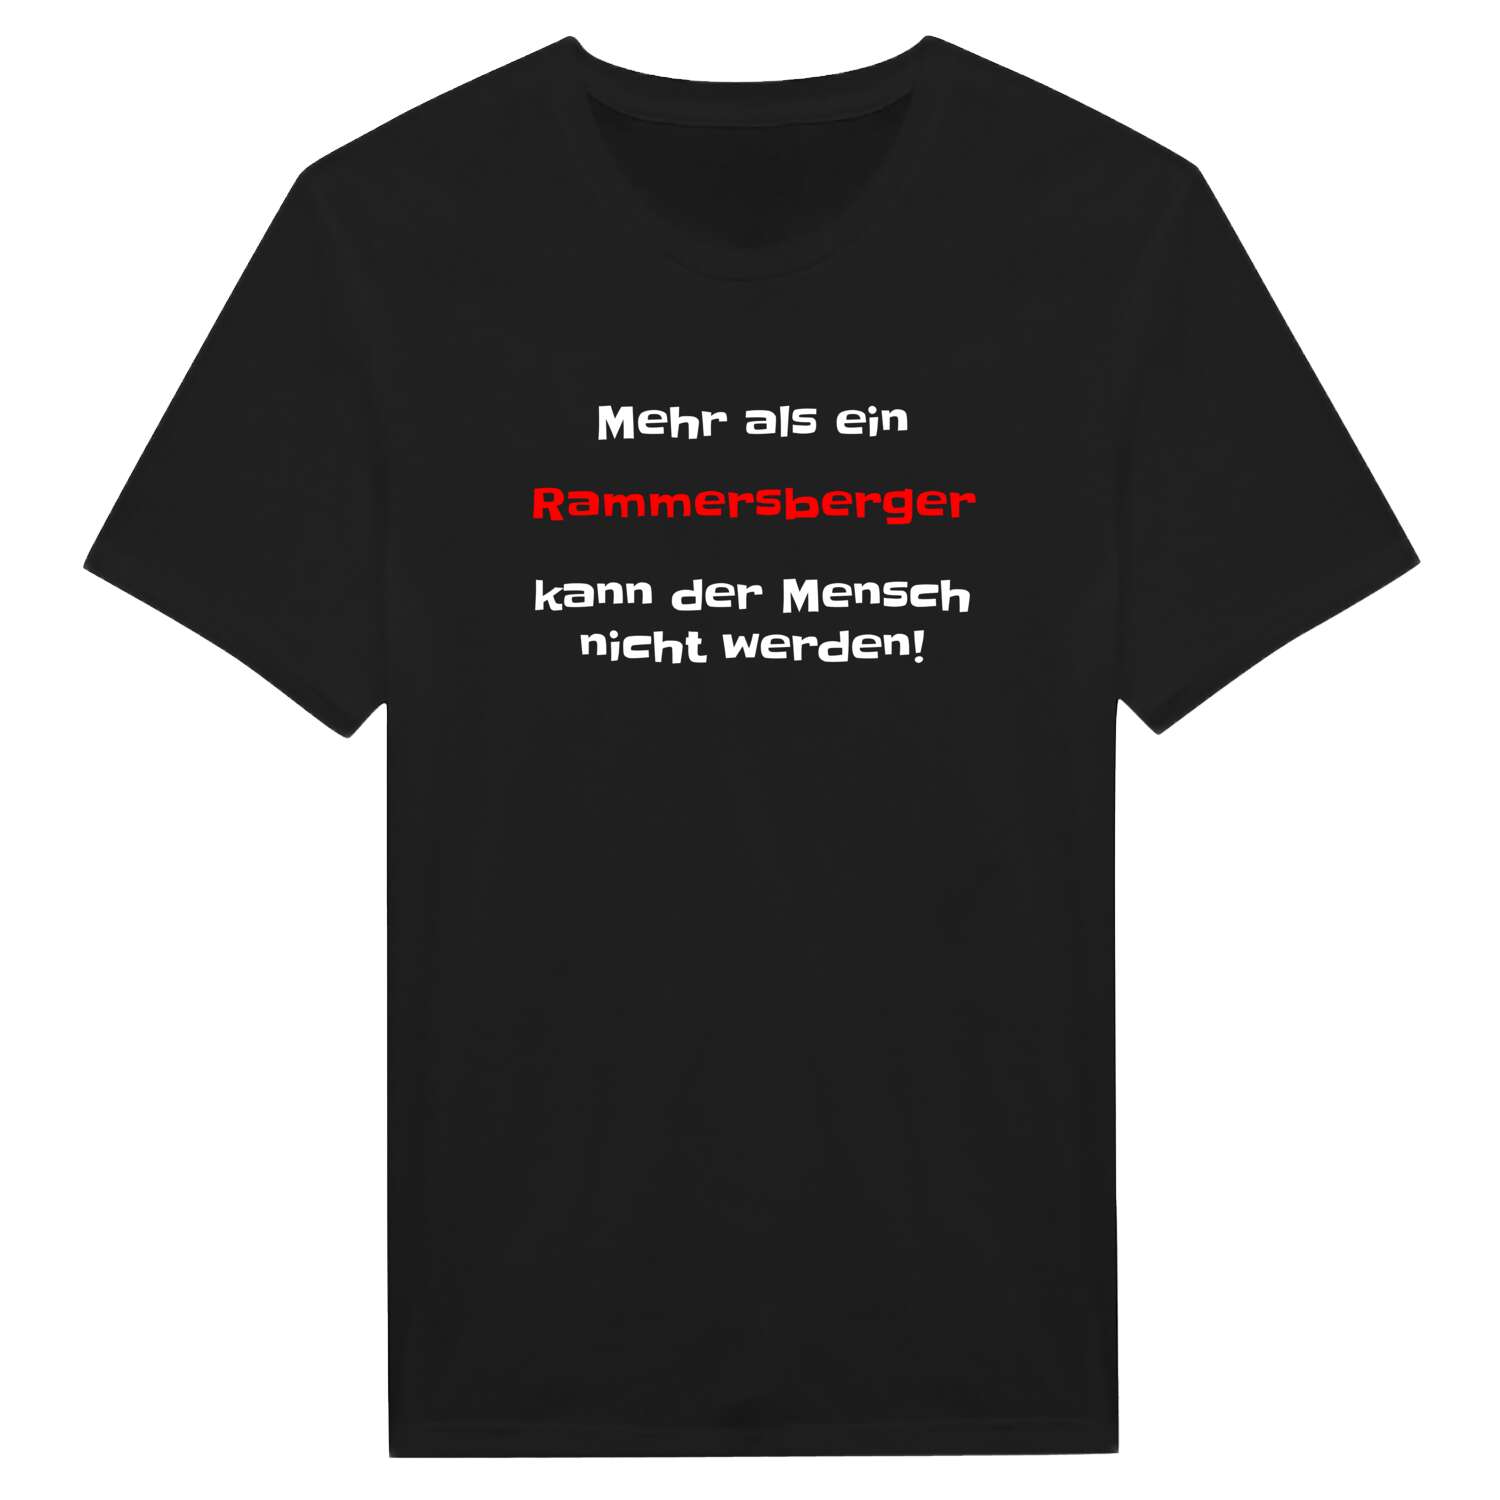 Rammersberg T-Shirt »Mehr als ein«